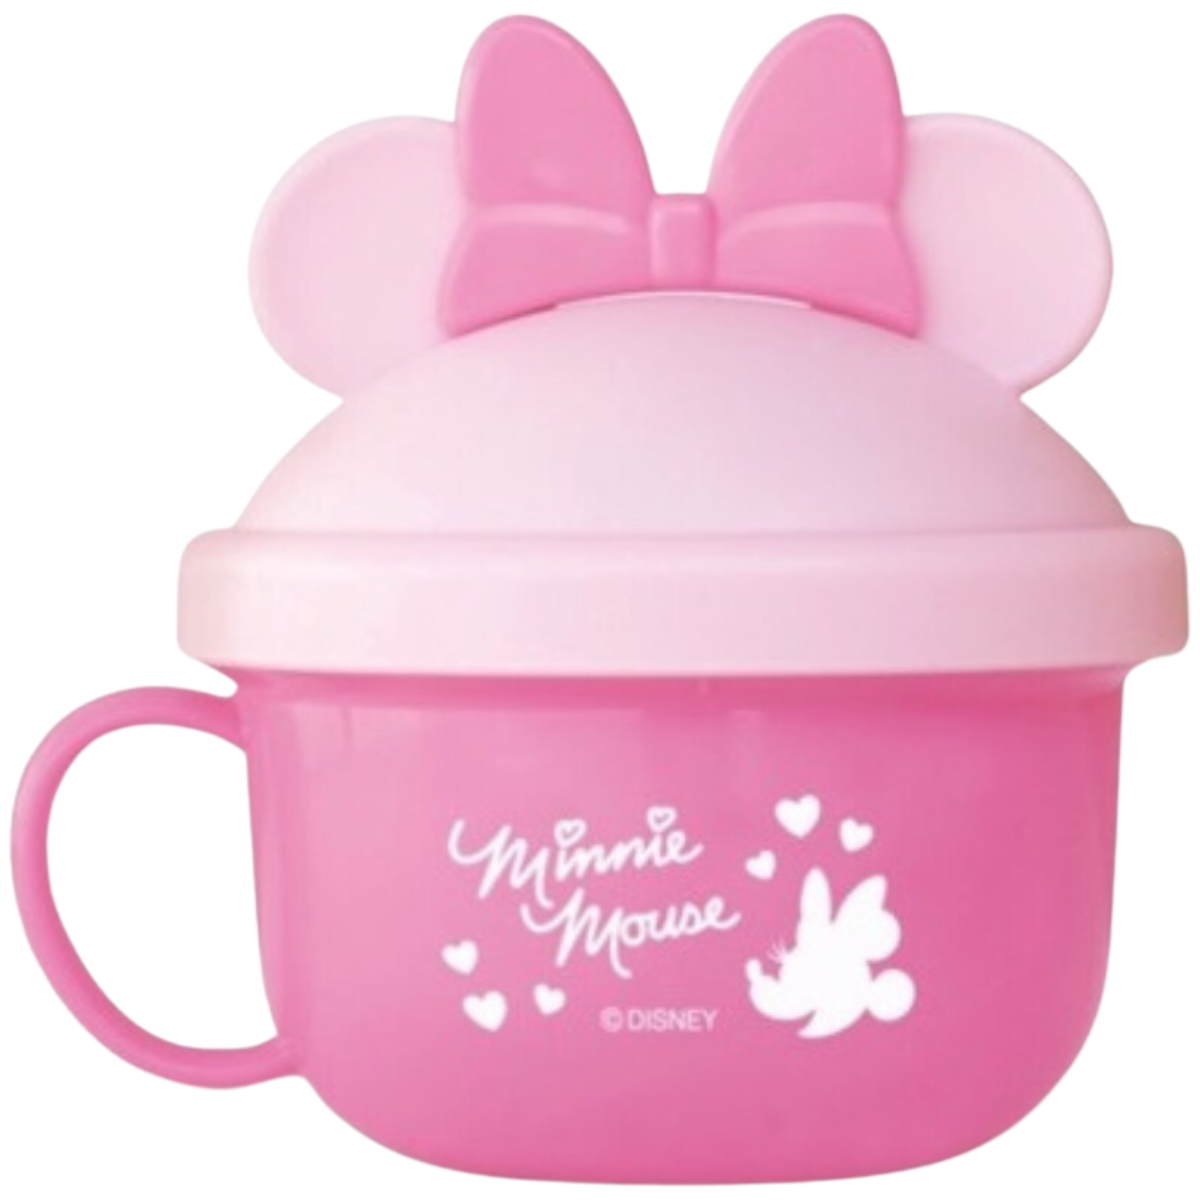 迪士尼 Disney 米妮 Minnie Mouse 米奇 Mickey Mouse 零食杯 兒童 嬰兒 幼兒 防漏 Nishiki Kasei